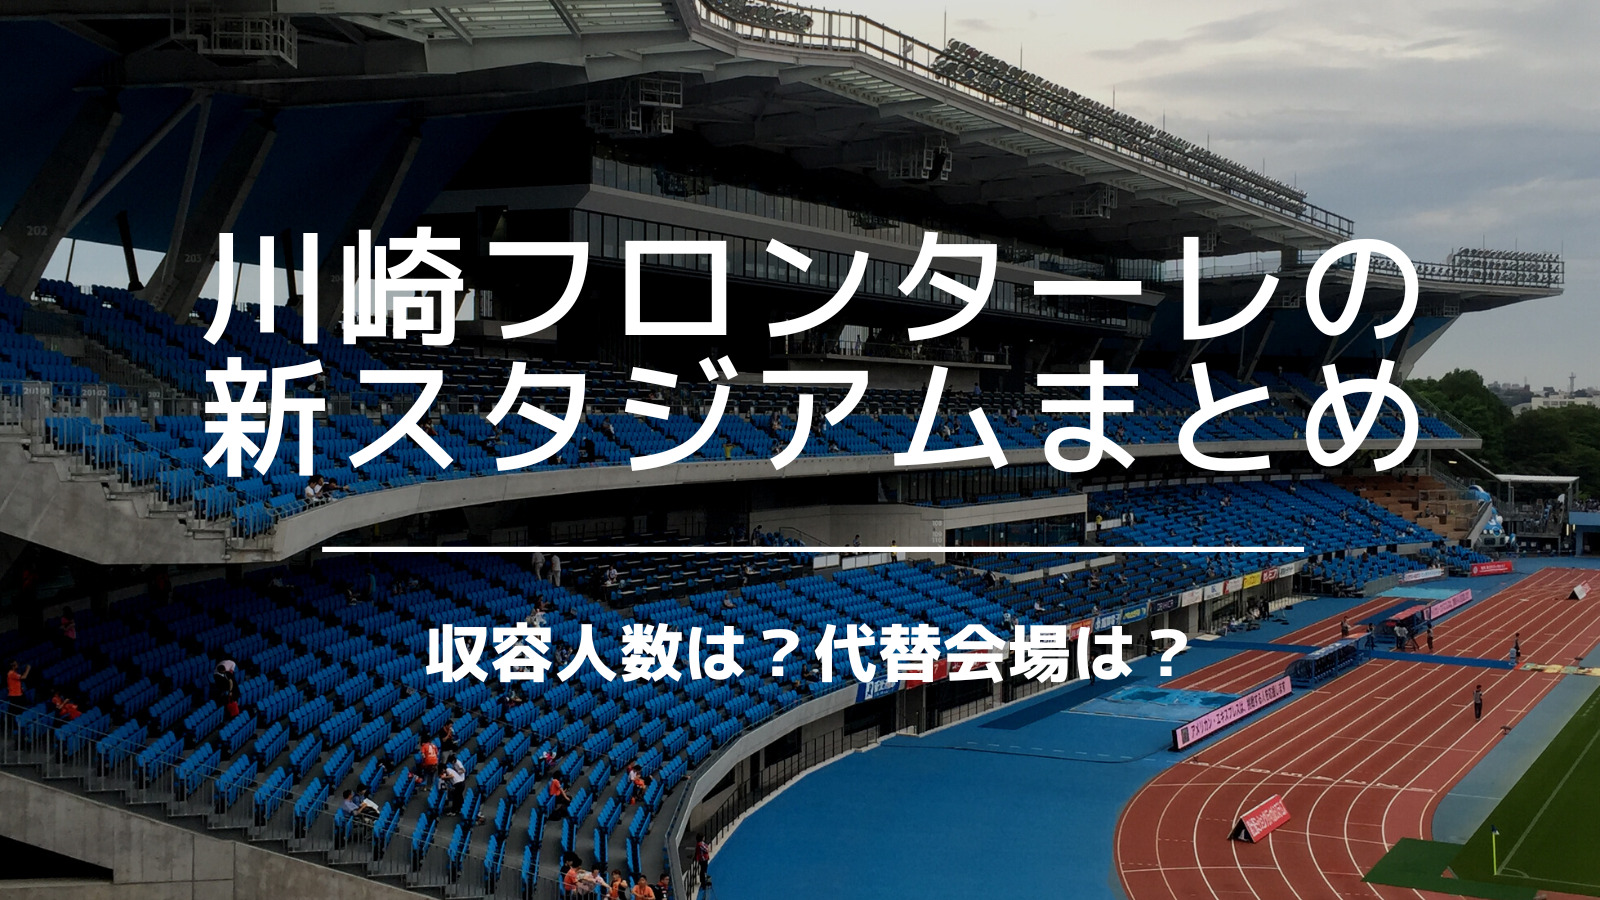 川崎フロンターレの新スタジアム 収容人数は 代替会場は 等々力新スタまとめ いっすーのサポブロ